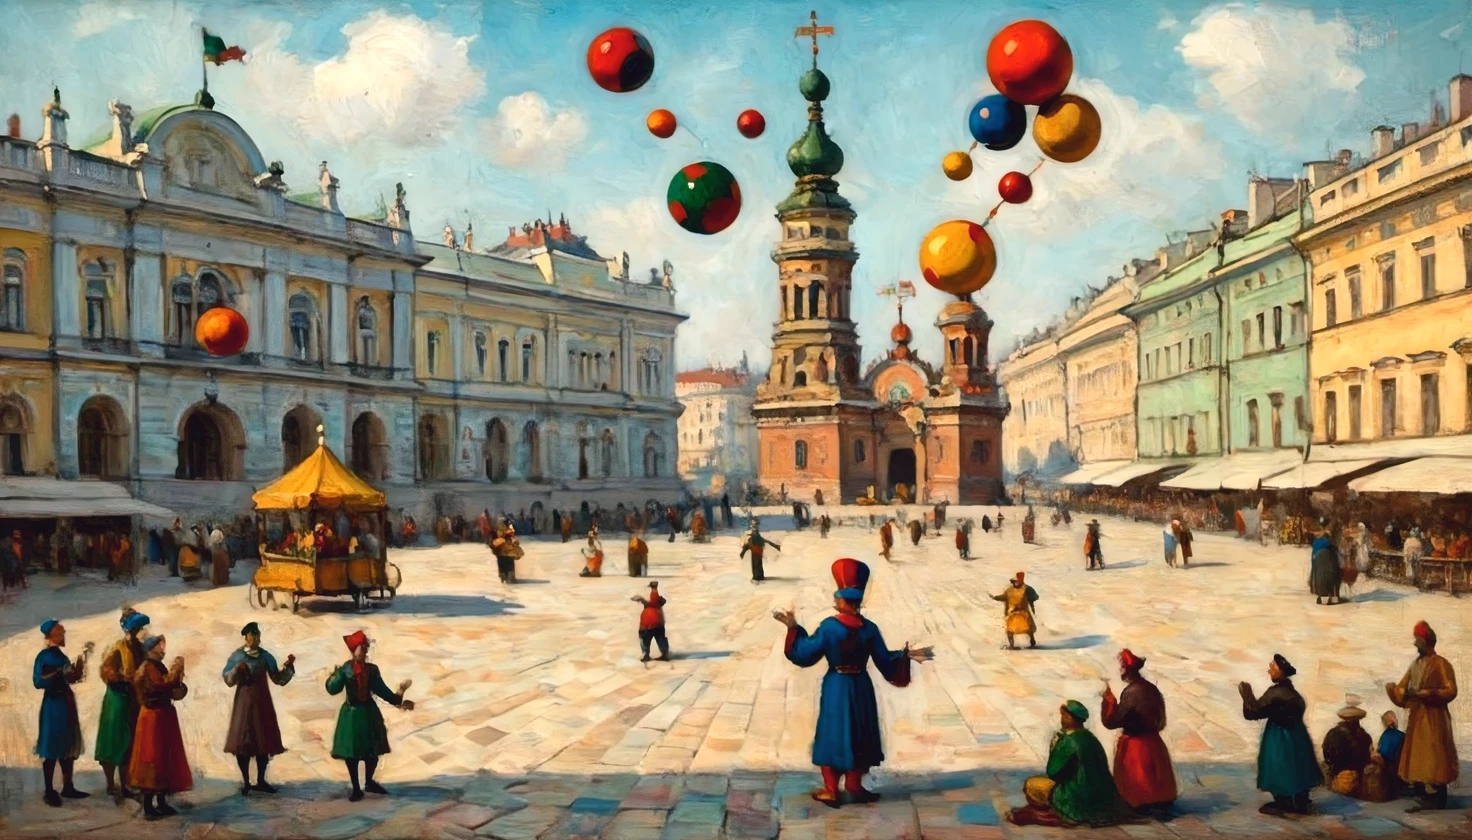 예술가 바실리 칸딘스키의 캔버스에 유화, ((광대 요술쟁이)) 성 궁전 광장에. 피터 스 버그, 광대 (저글링):1.다양한 색깔의 공 5개, multi-colored balls rotate around 광대, 바실리 칸딘스키의 스타일을 완벽하게 준수